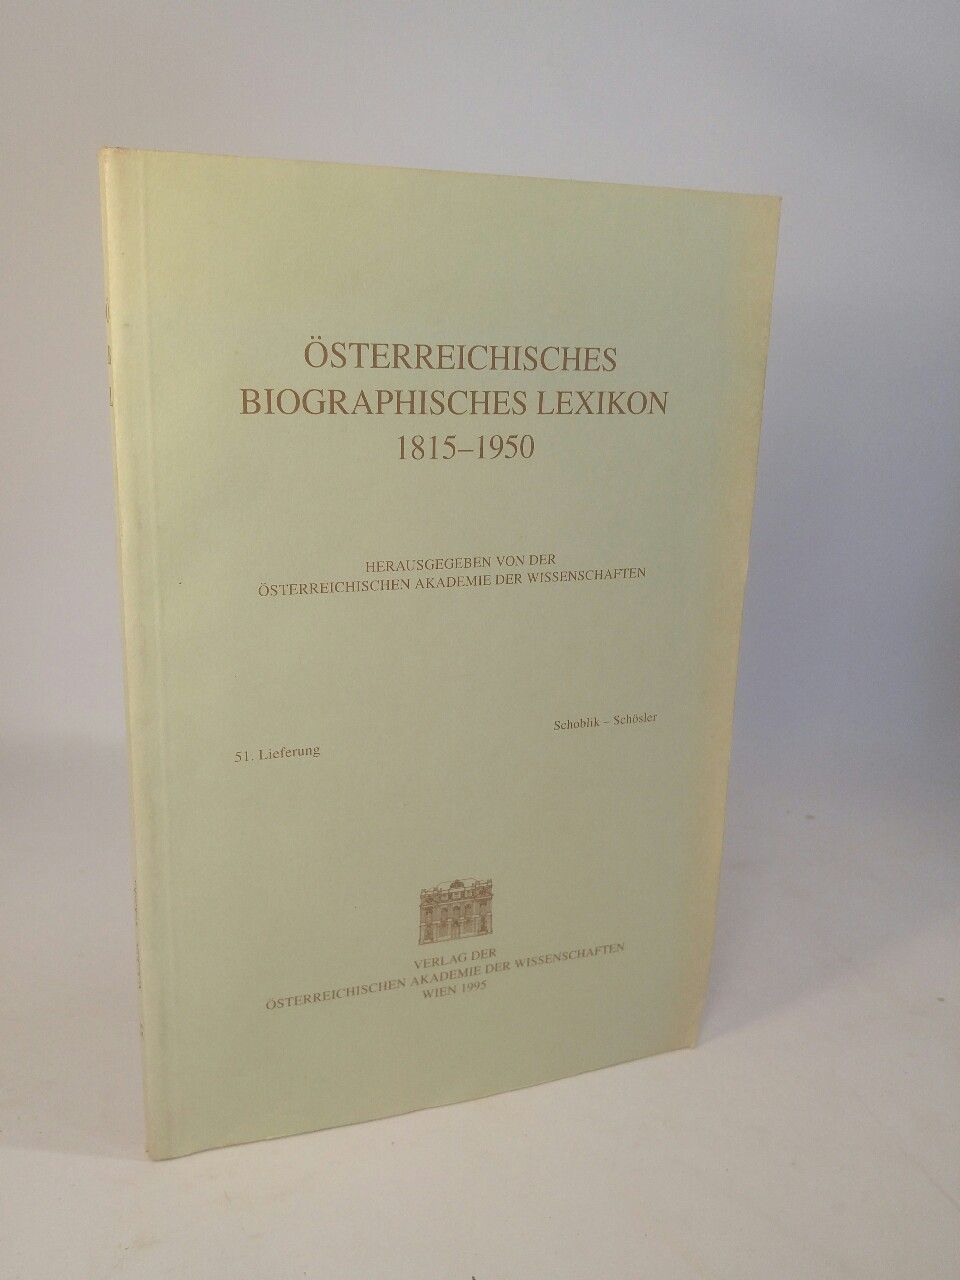 Österreichisches Biographisches Lexikon 1815-1950. 51. Lieferung: Schoblik - Schösler. - Österreichische Akademie der Wissenschaften